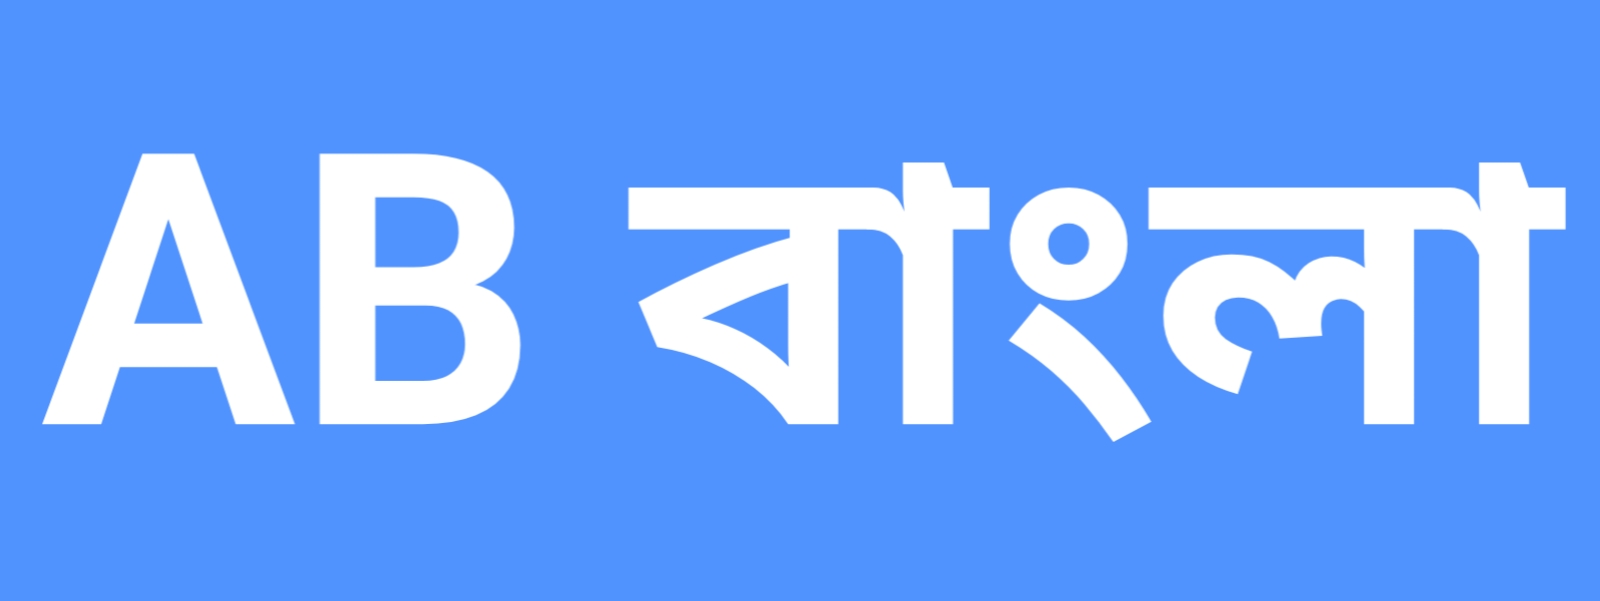 AB Bangla